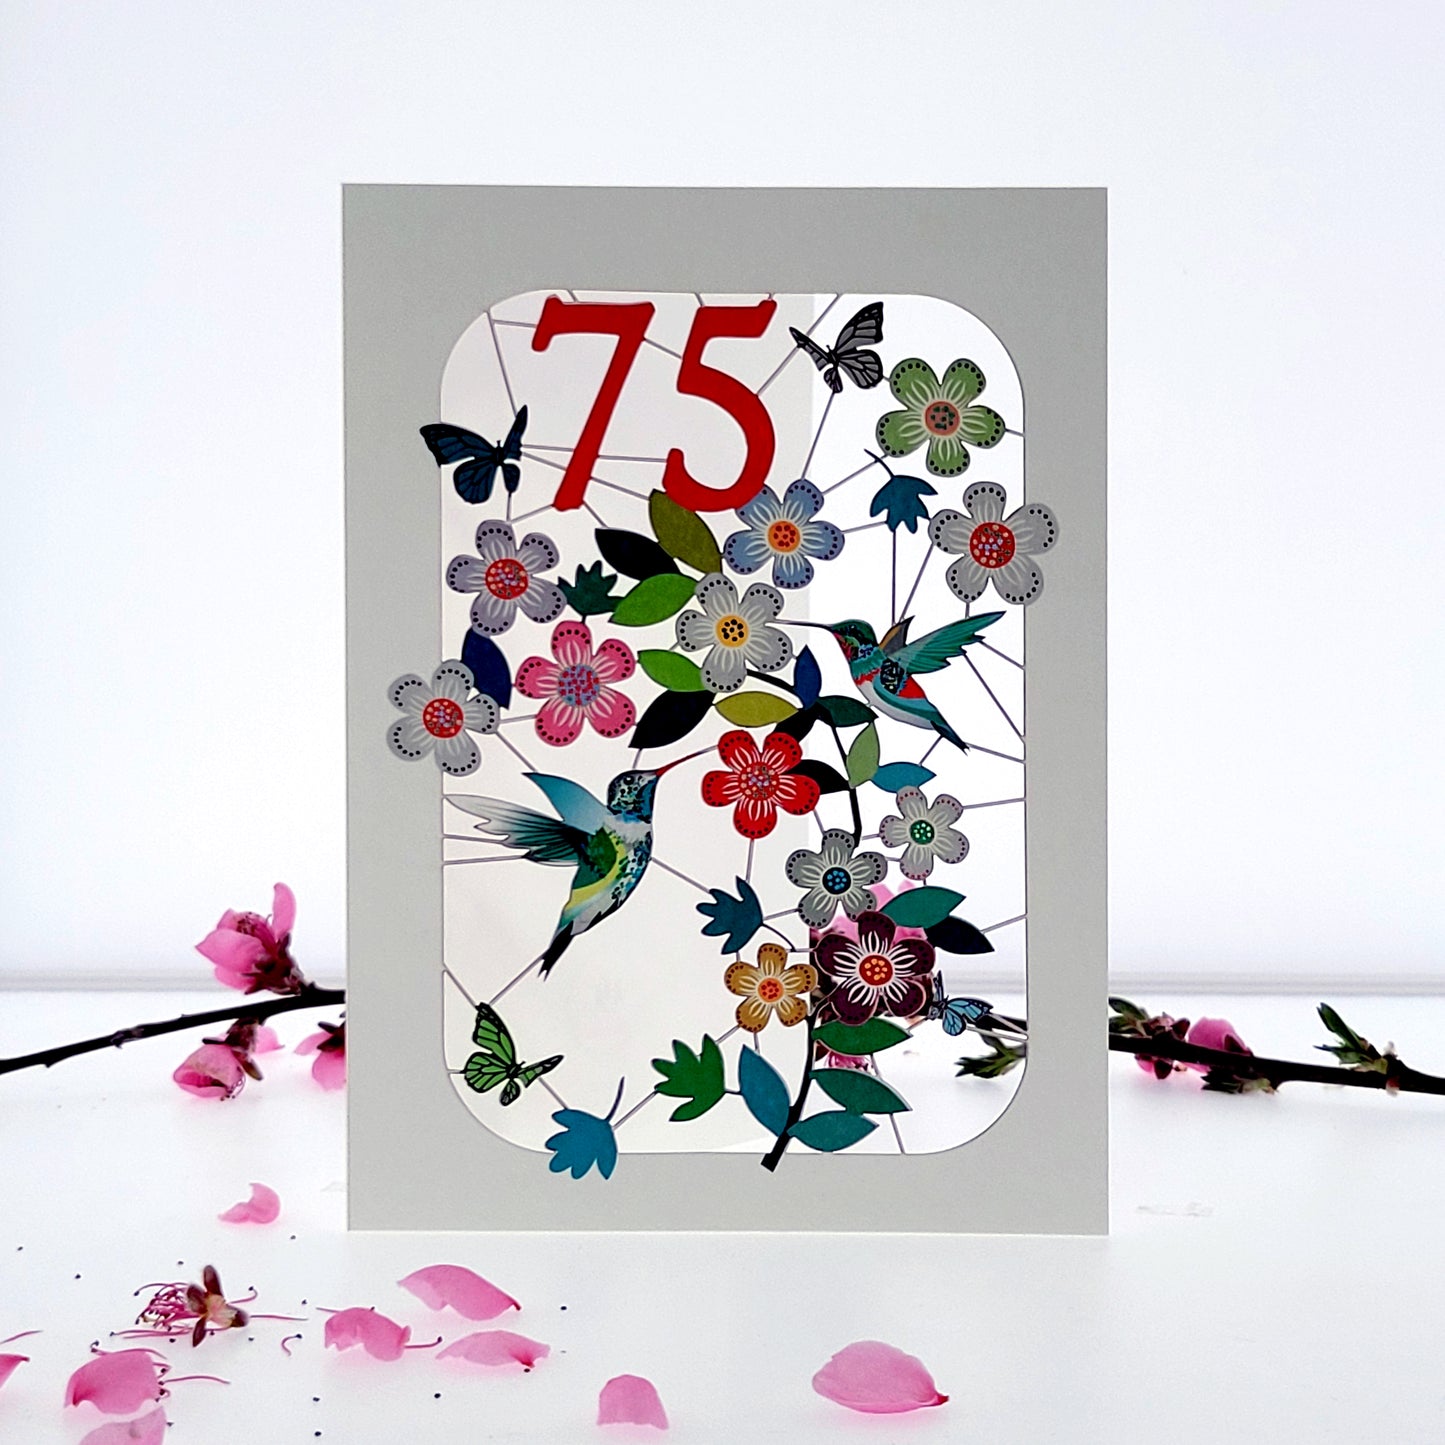 Age 75 Birthday Card, 75th Birthday Card, Humming Bird Card - GF075